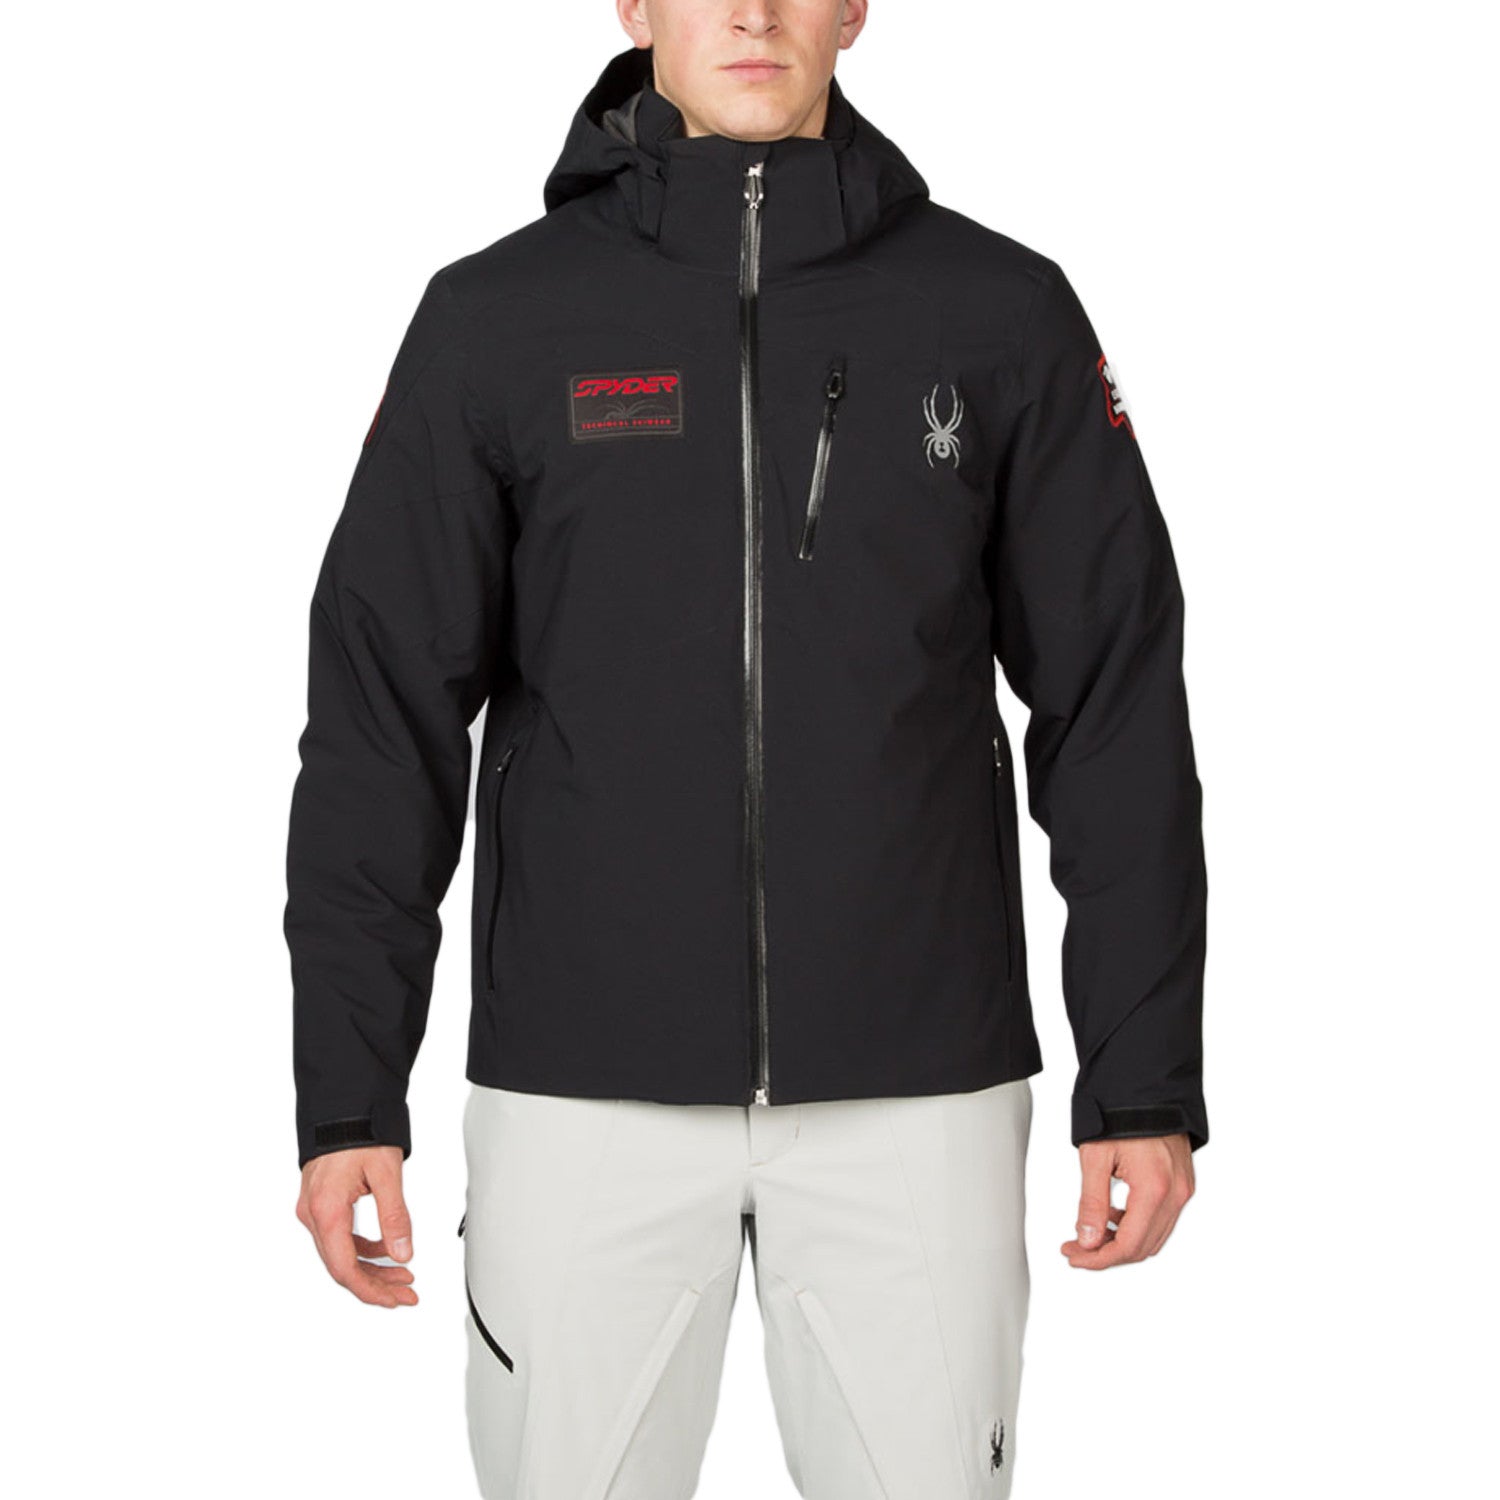 Kan weerstaan Bestrooi Monopoly Spyder Tripoint Waterproof Hooded Insulated Winter Jacket - Mens -  Shoplifestyle